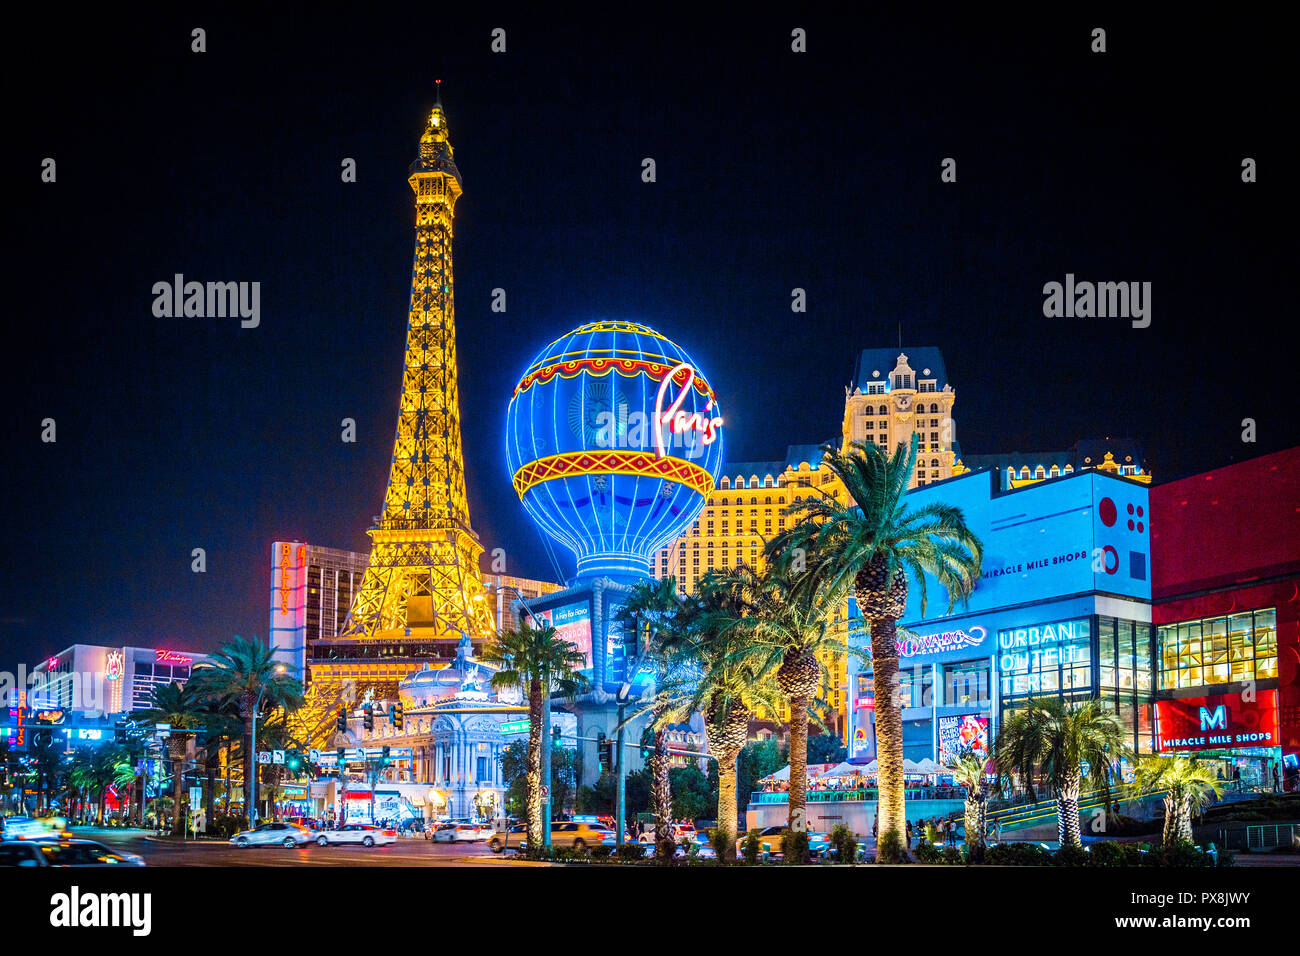 20 septembre 2017 - LAS VEGAS : vue classique du centre-ville de Las Vegas colorés avec célèbre Strip et Paris Las Vegas hotel et casino de nuit Banque D'Images